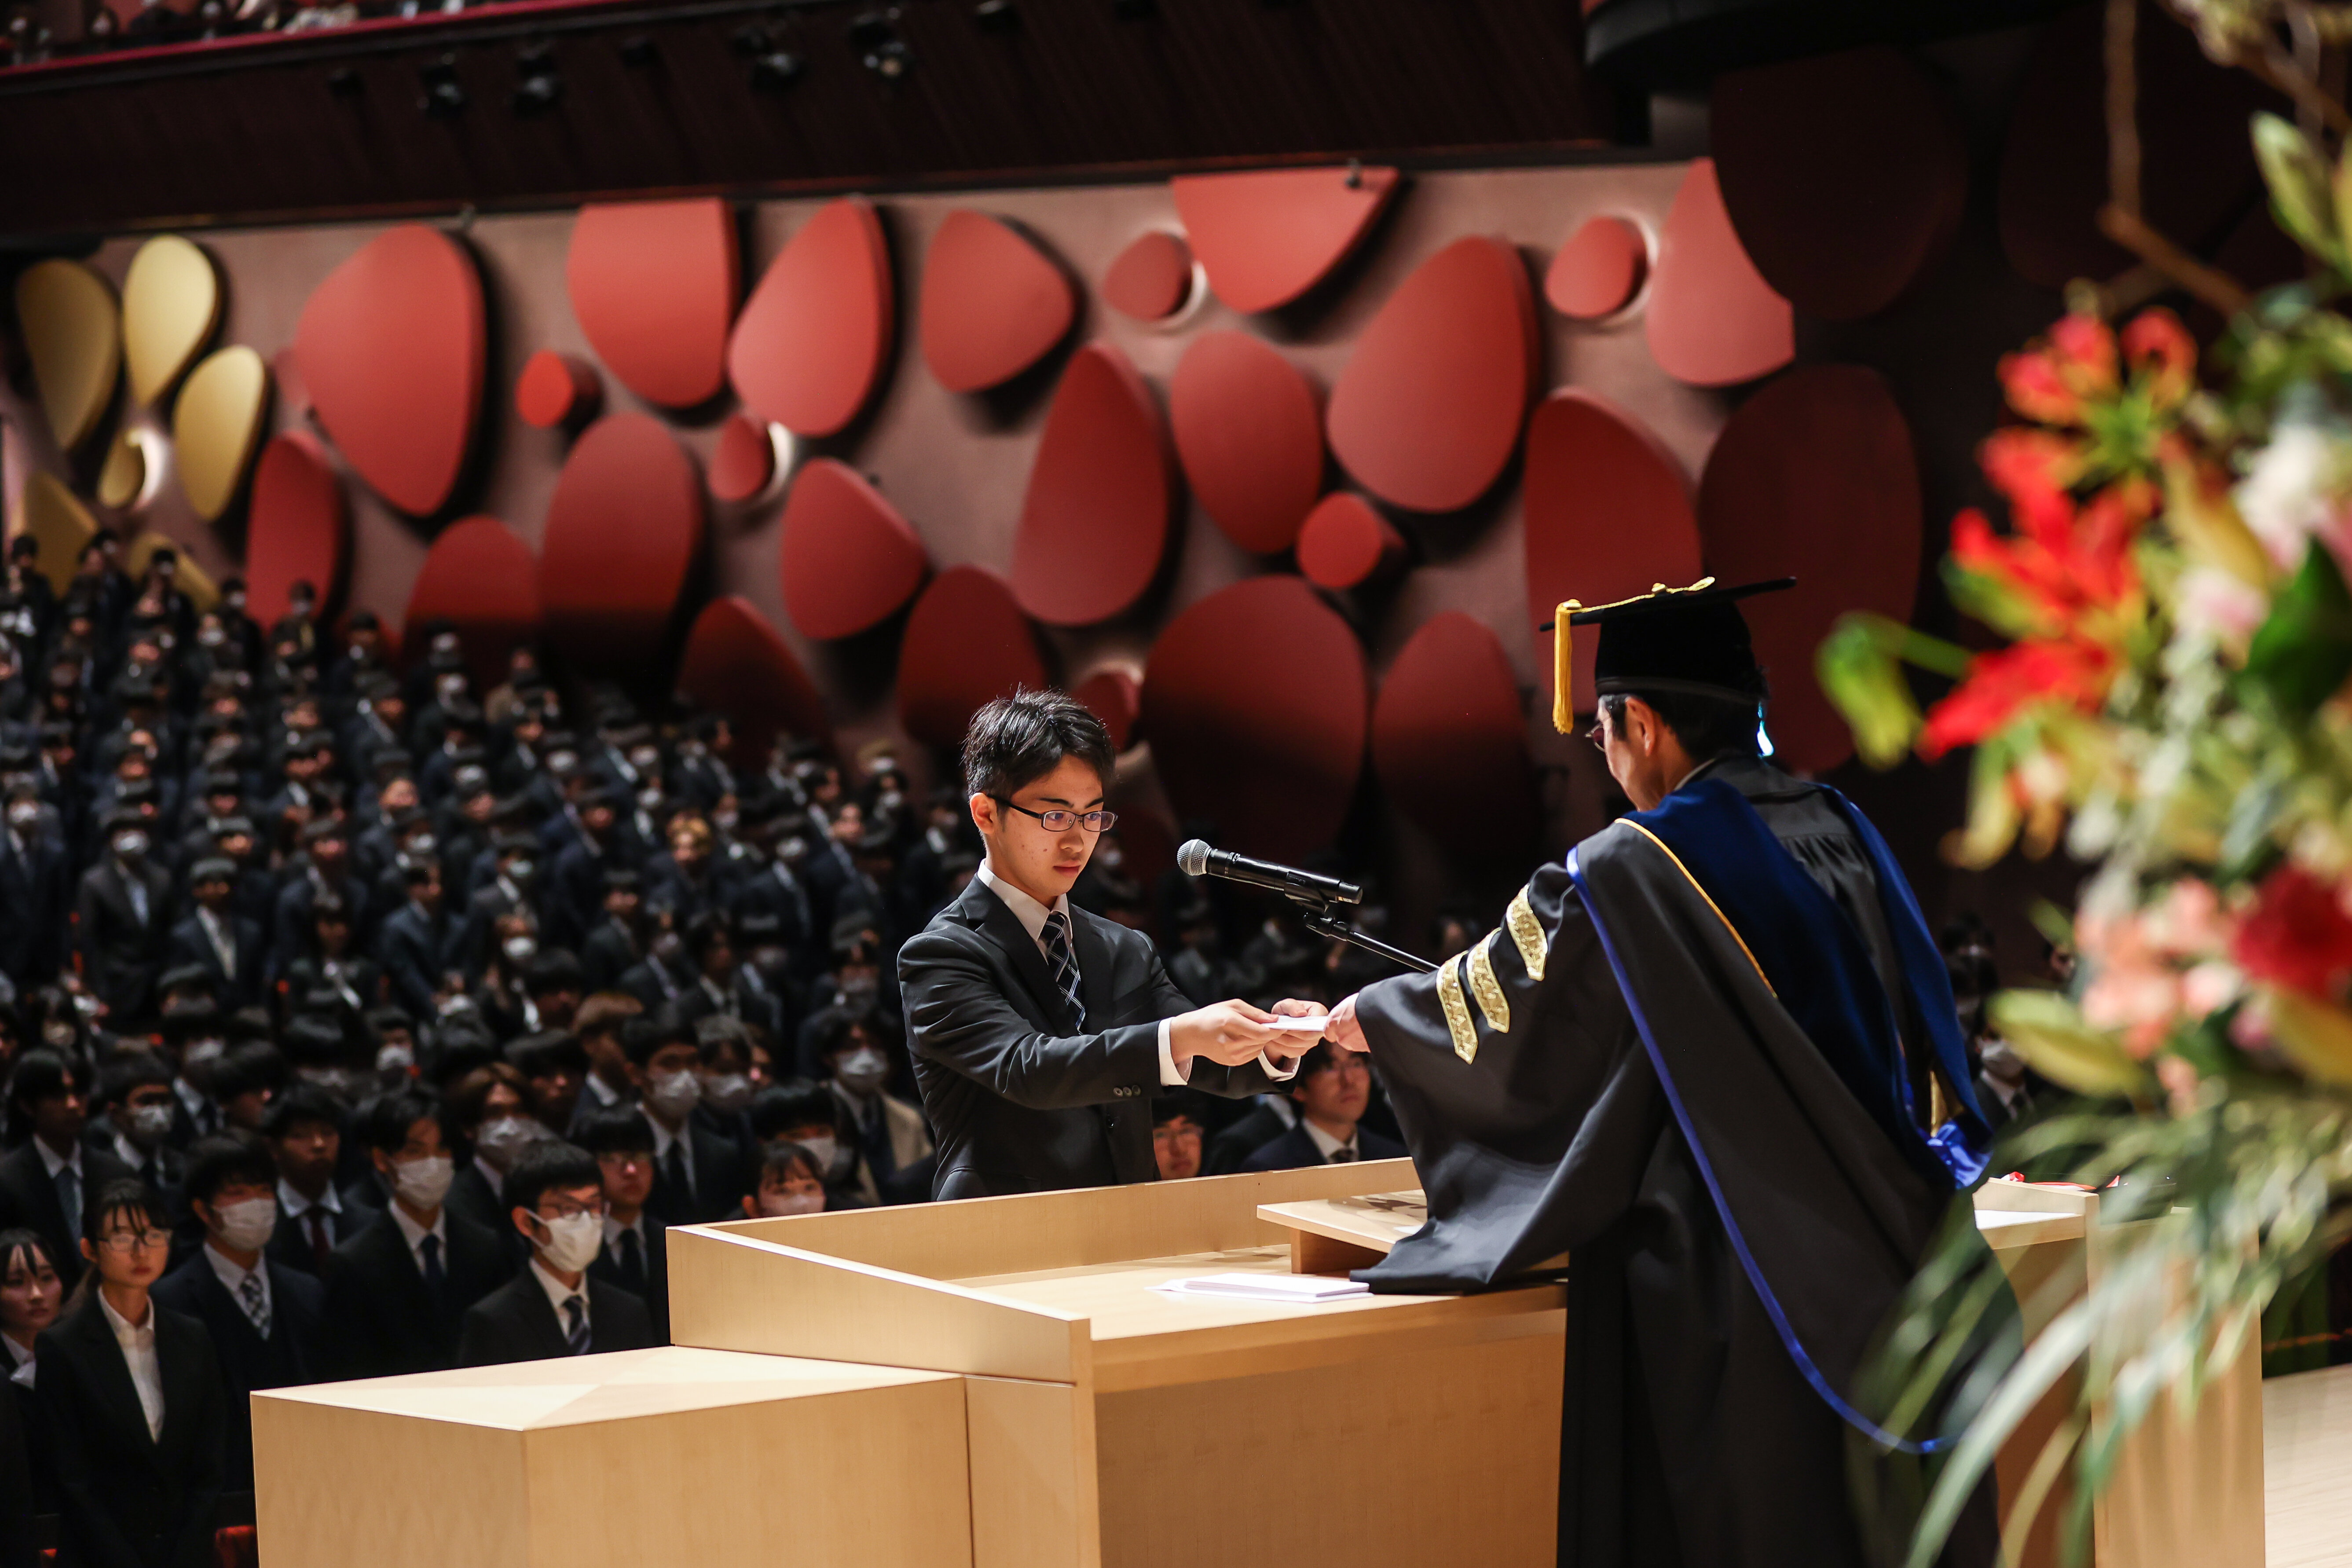 令和6年度入学式を挙行―水戸市民会館で初の開催 2277人に入学許可